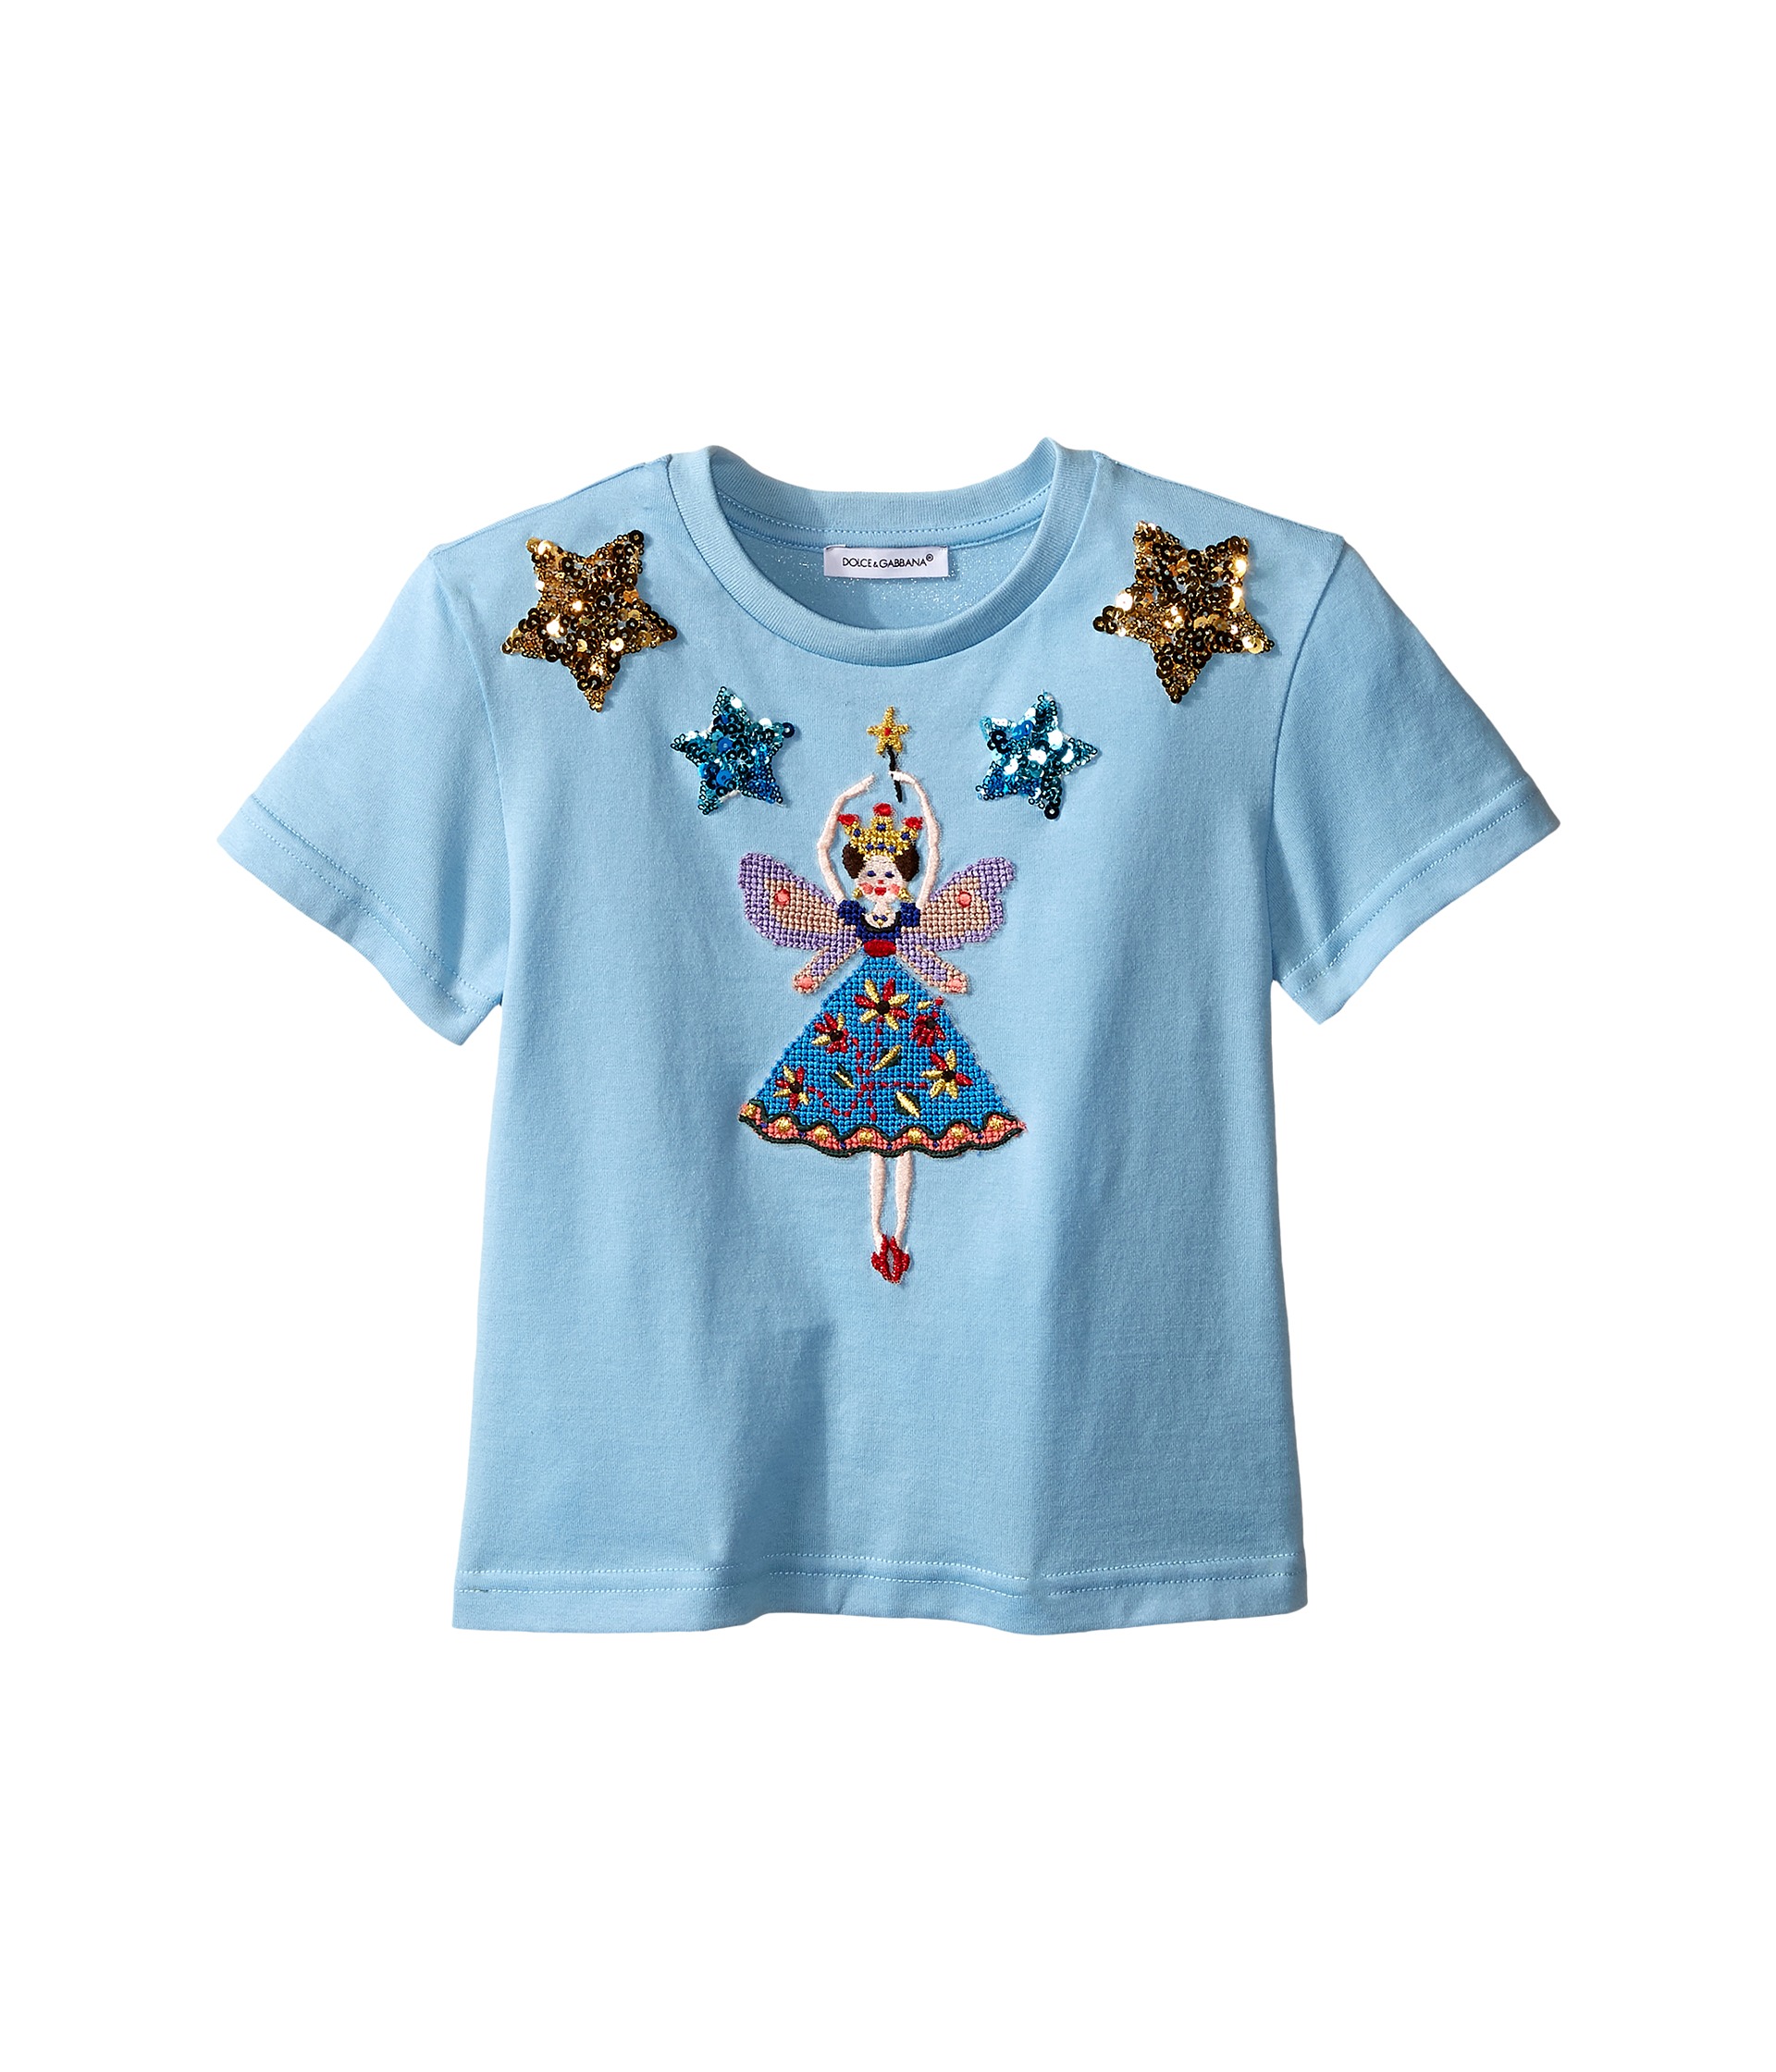 Dolce & Gabbana Kids City Short Sleeve T Shirt (Toddler/Little Kids) Light Blue Print